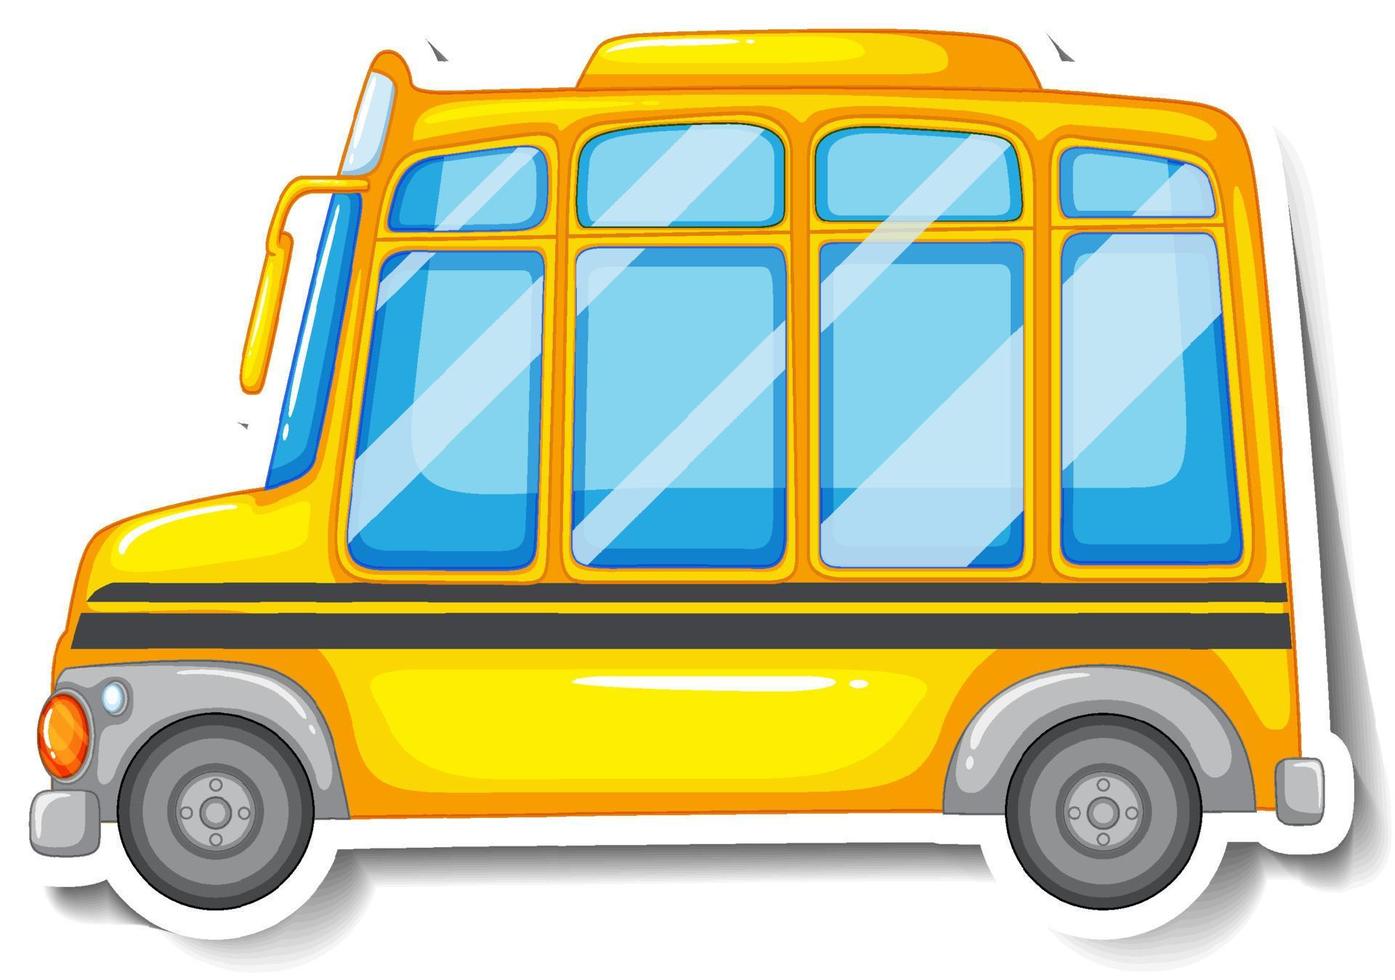 schoolbus cartoon sticker op witte achtergrond vector